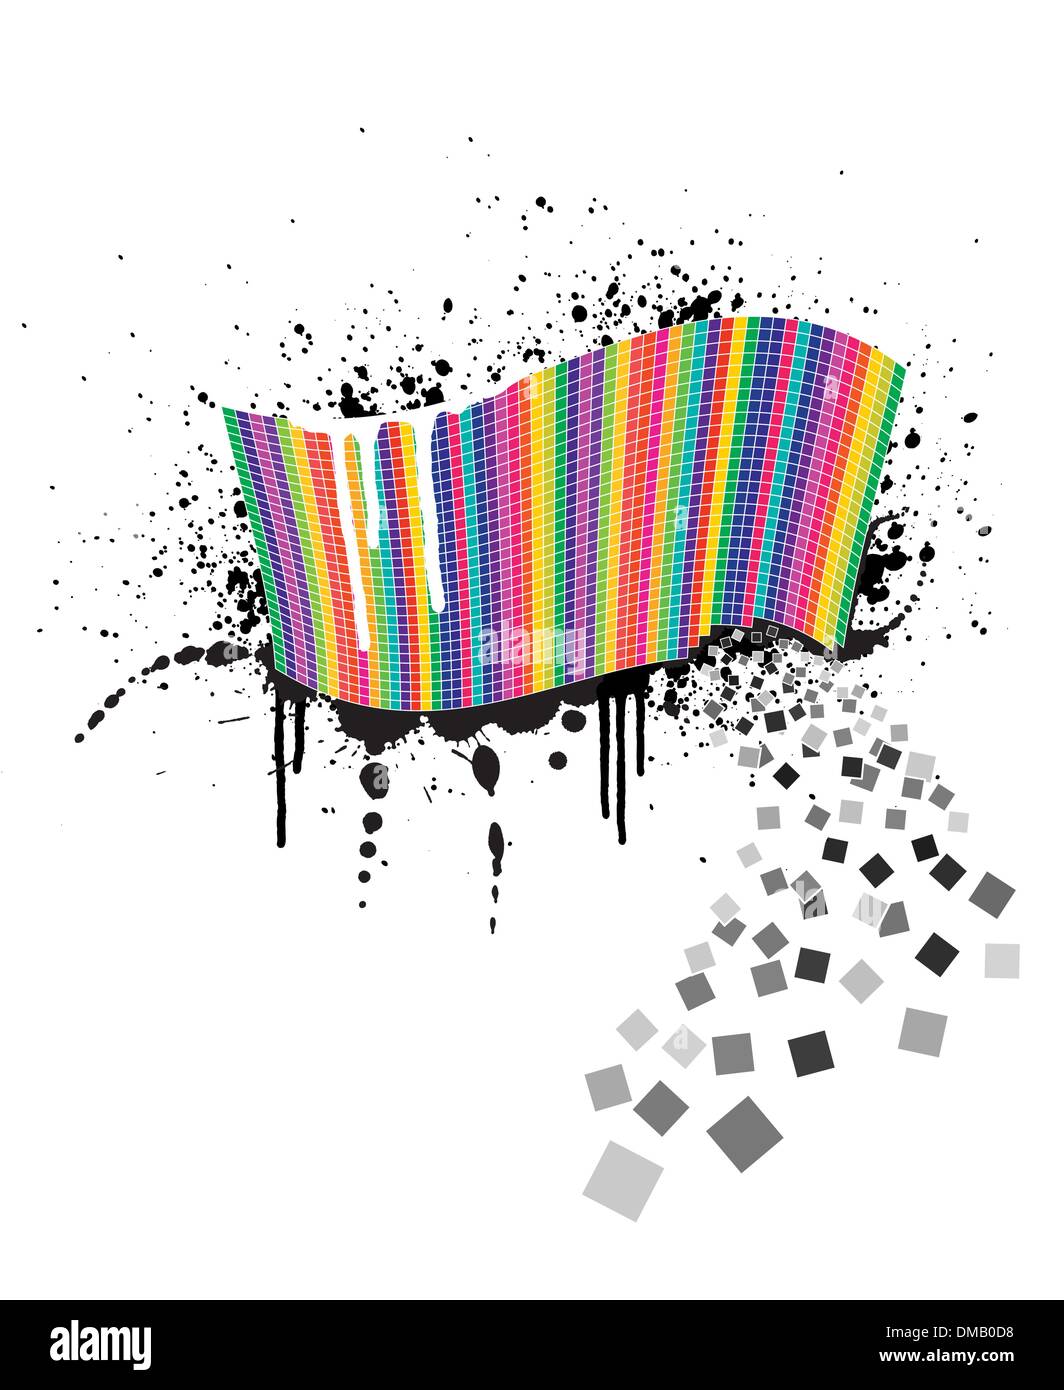 Regenbogen Welle voll von bunten Quadrate auf einer Tinte splatter design Stock Vektor